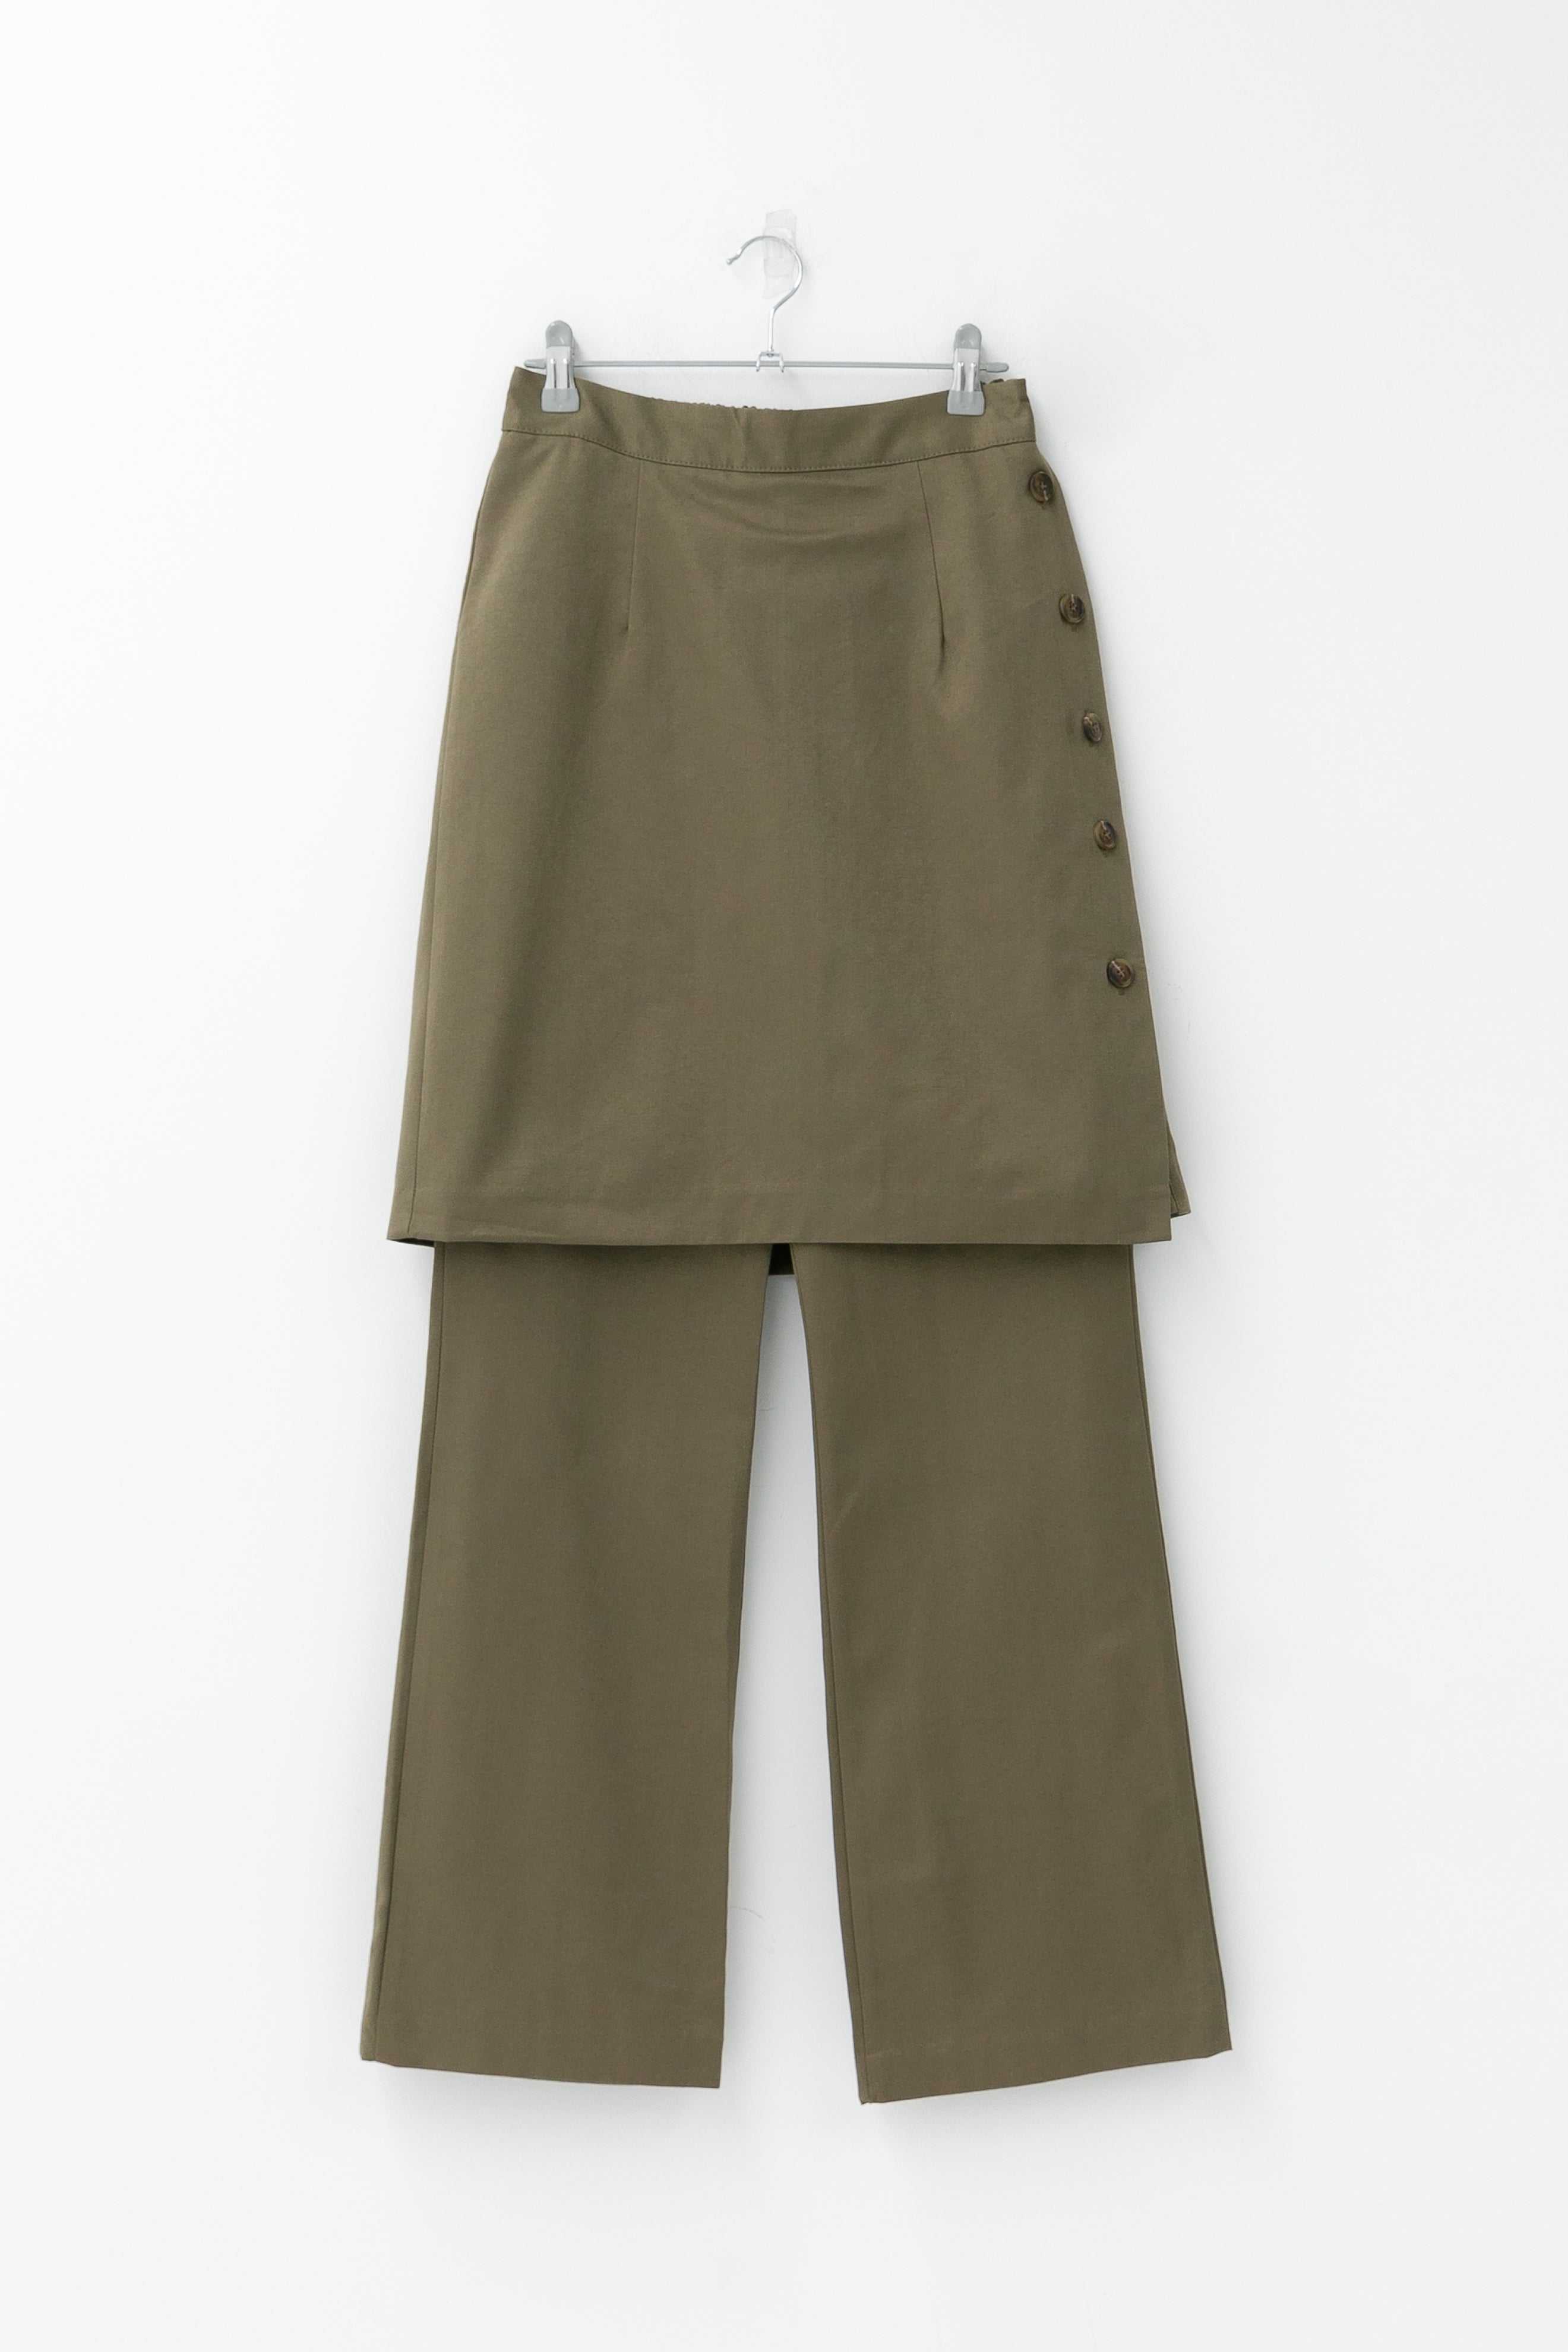 button wrap skirt pants(3colors)